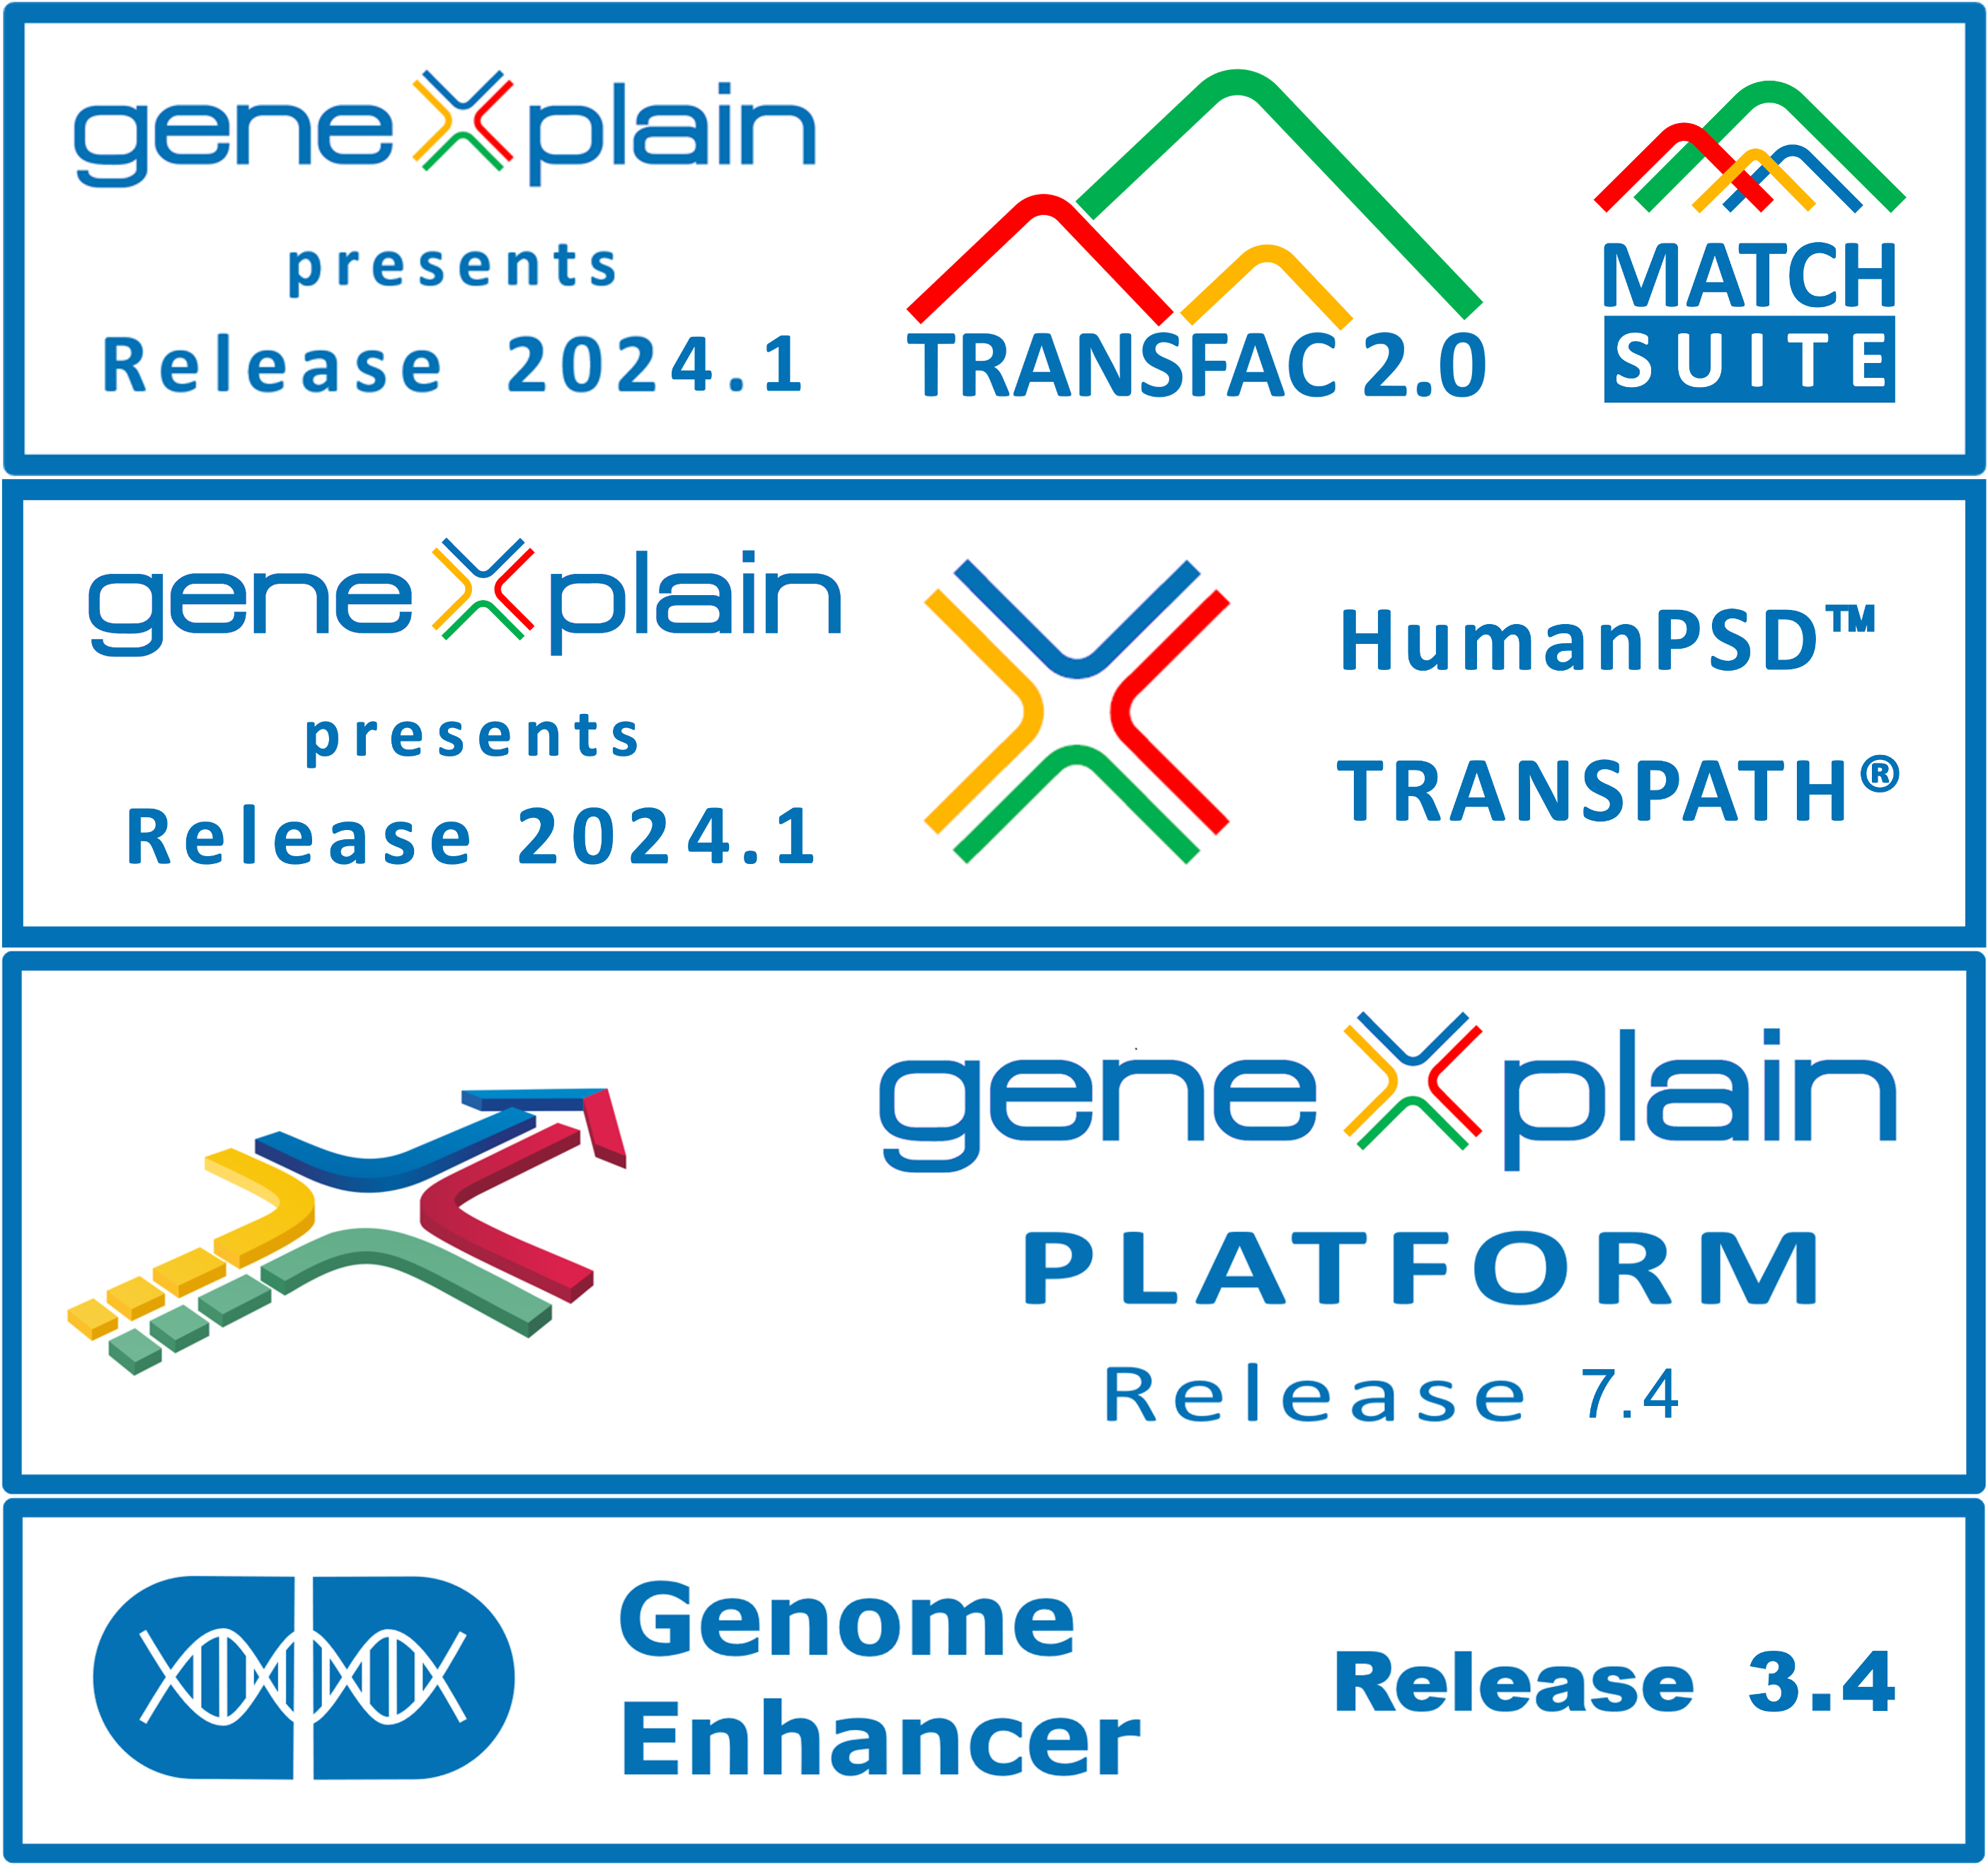 geneXplain release 2024.1